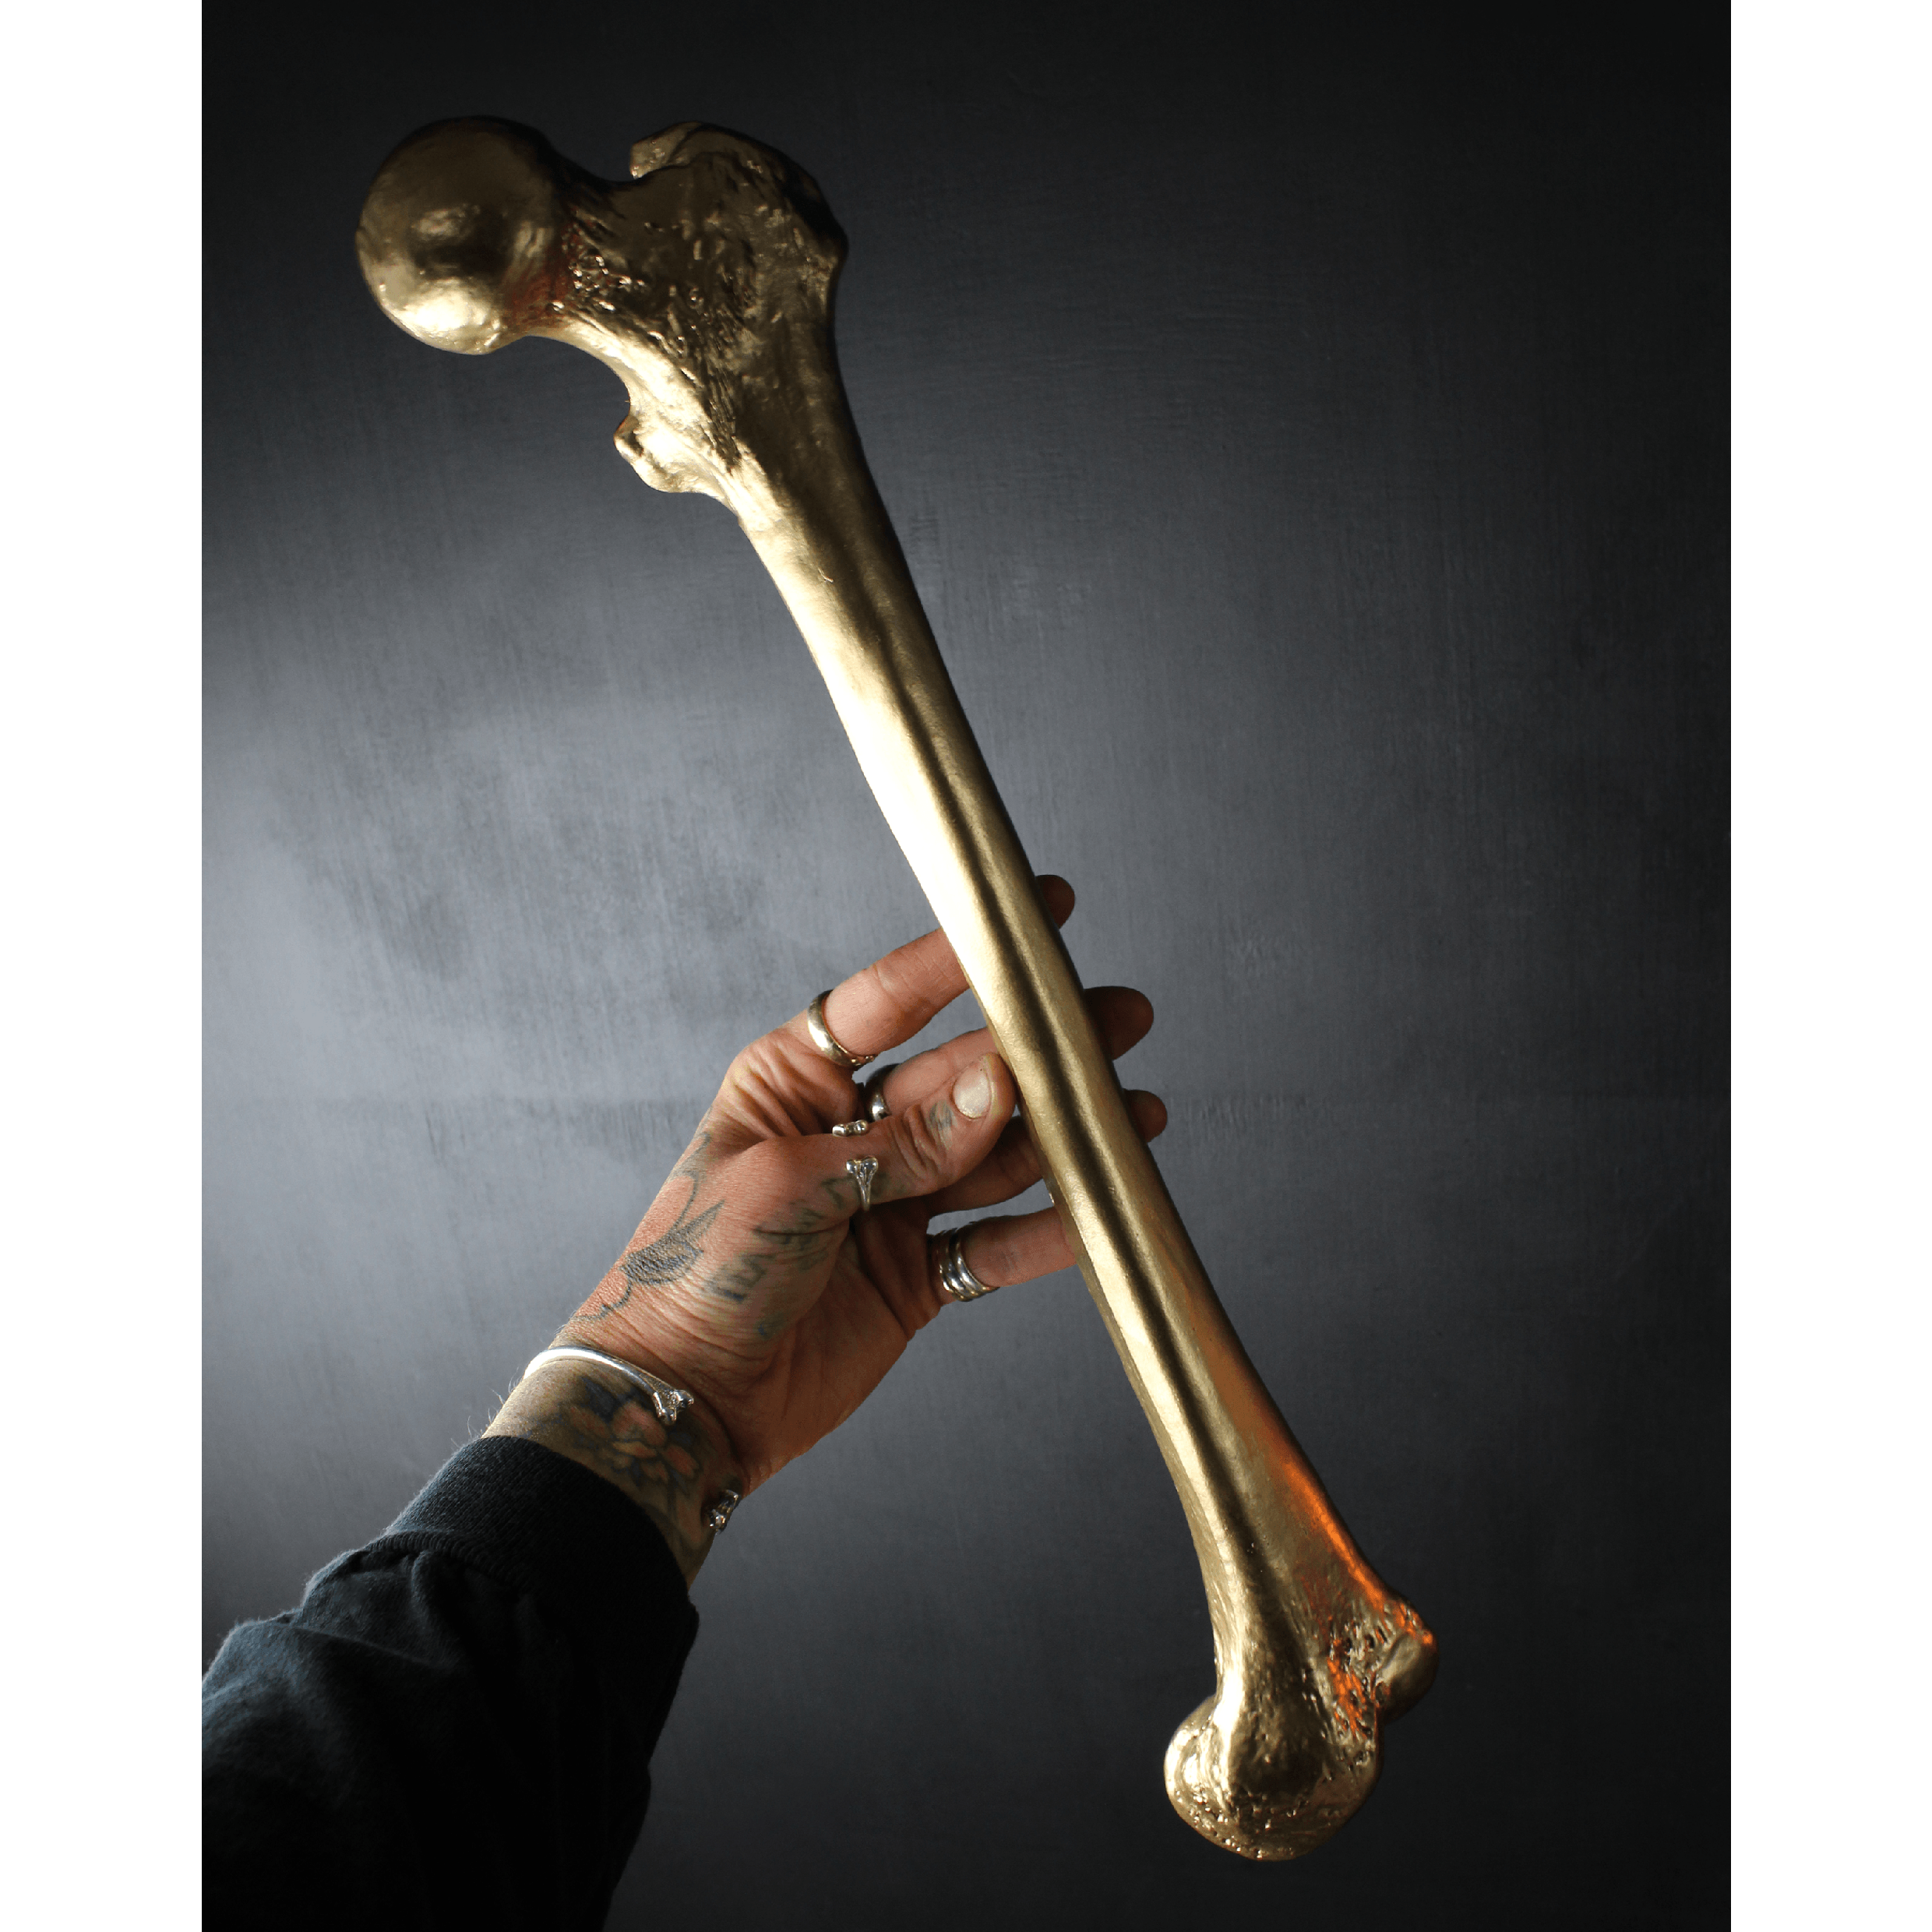 The Golden Bone